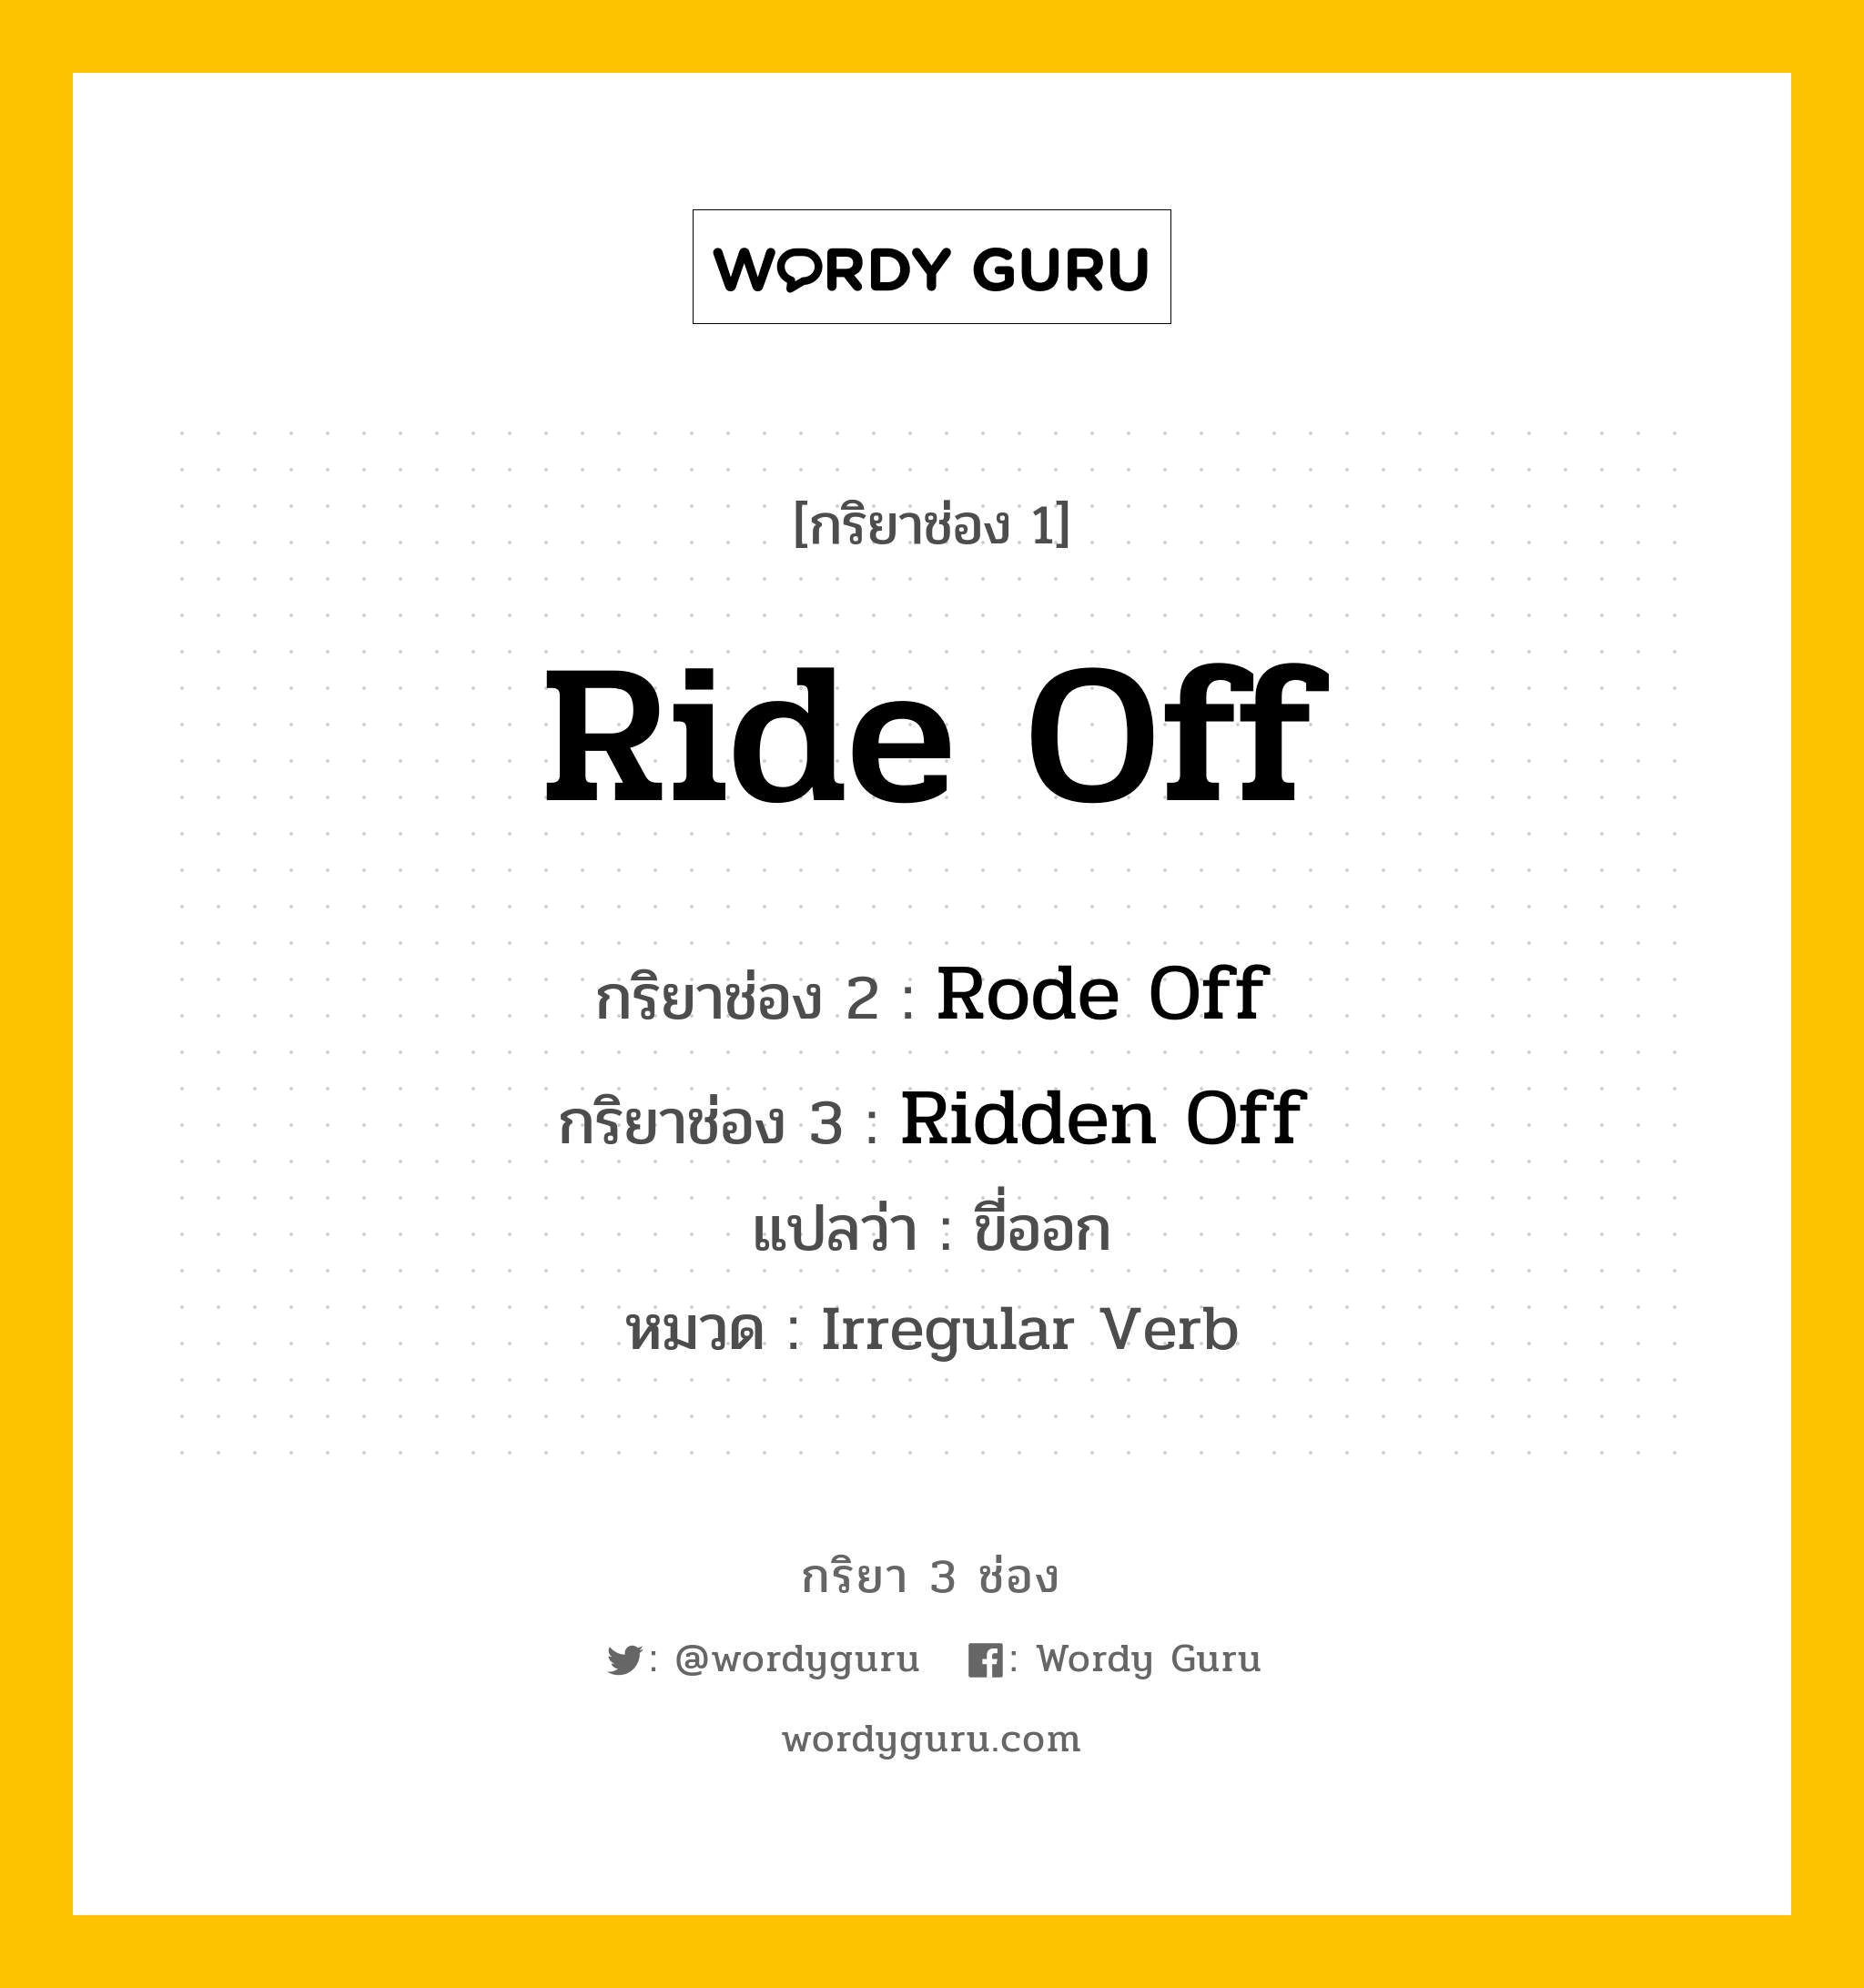 กริยา 3 ช่อง: Ride Off ช่อง 2 Ride Off ช่อง 3 คืออะไร, กริยาช่อง 1 Ride Off กริยาช่อง 2 Rode Off กริยาช่อง 3 Ridden Off แปลว่า ขี่ออก หมวด Irregular Verb หมวด Irregular Verb